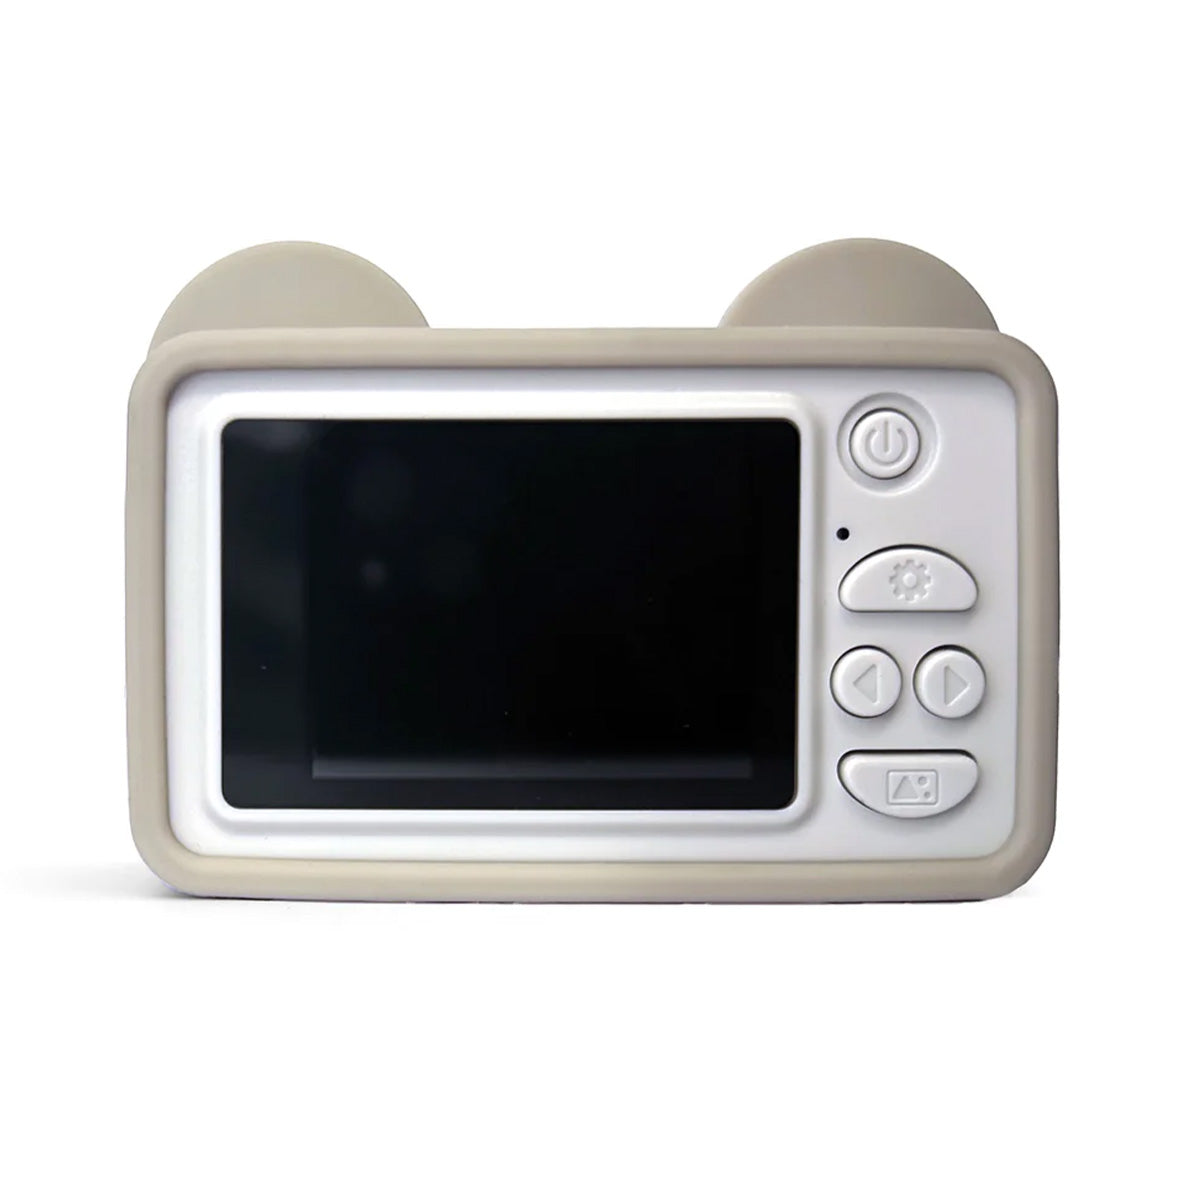 De Hoppstar Rookie oat is de perfecte eerste digitale camera voor jouw kindje. Deze kindercamera is perfect voor kleine handjes. De camera wordt beschermd door een vrolijke en zachte siliconen hoes. VanZus.